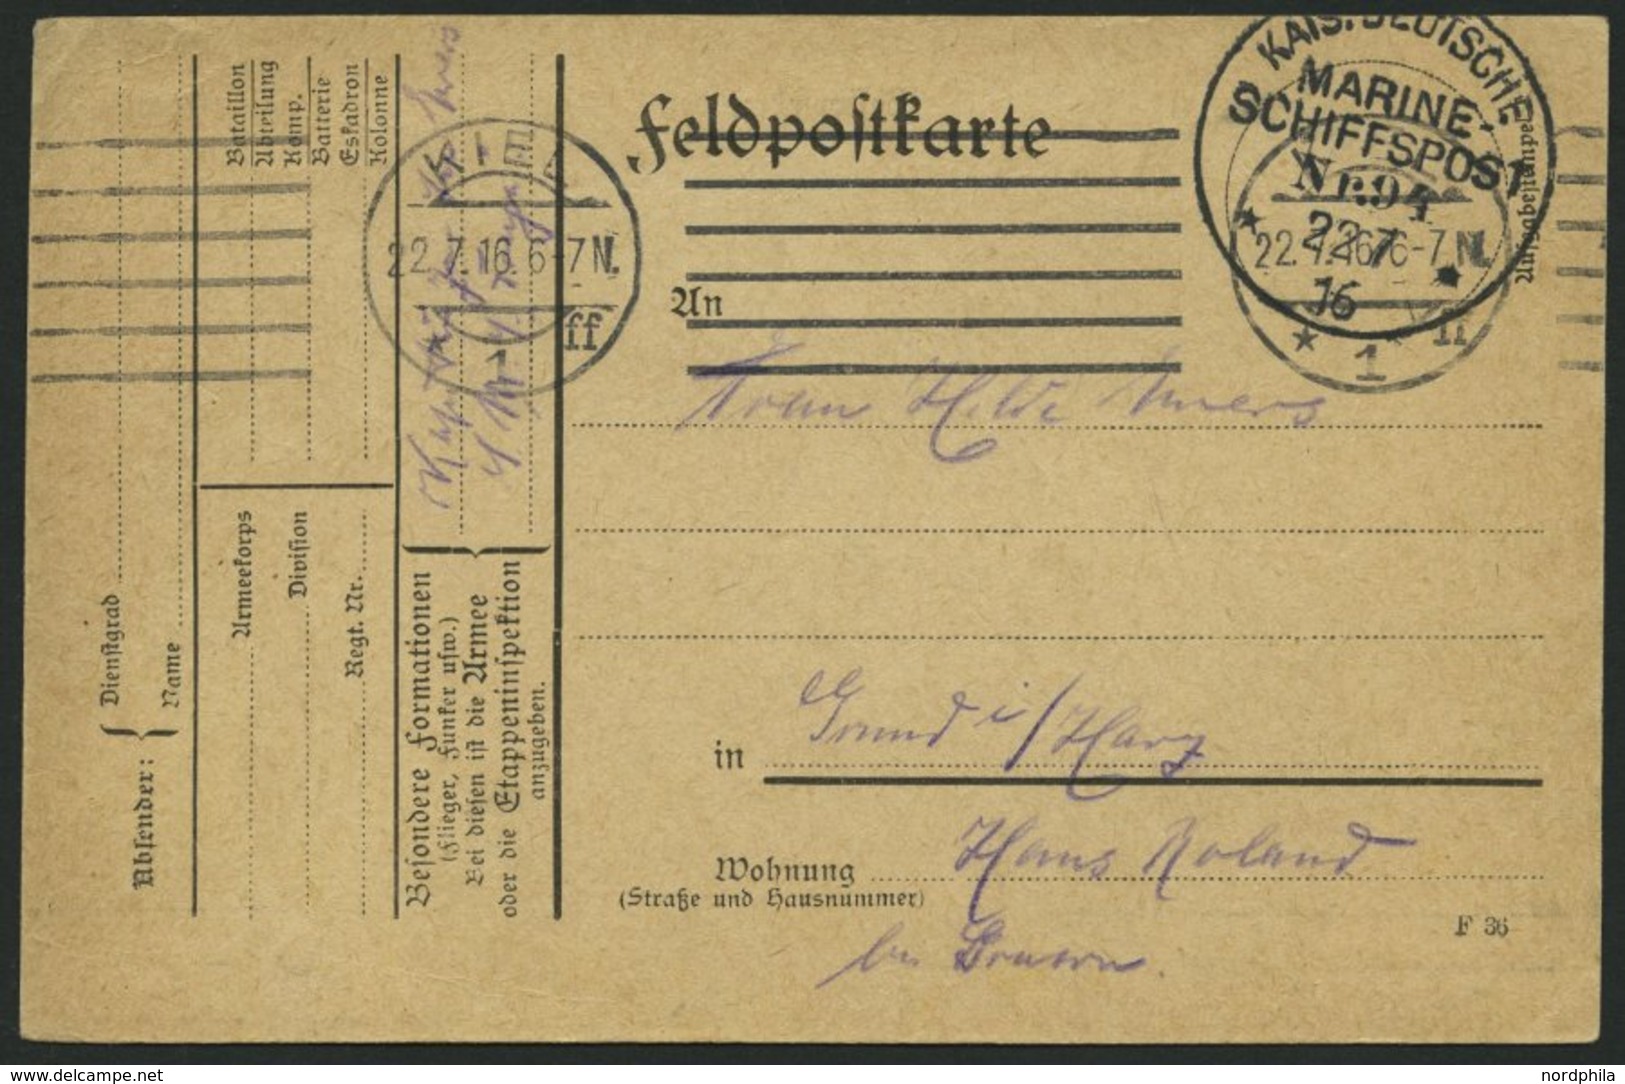 MSP VON 1914 - 1918 94 (Großer Kreuzer FREYA), 22.7.1916, Feldpostkarte Von Bord Der Freya, Pracht - Maritiem